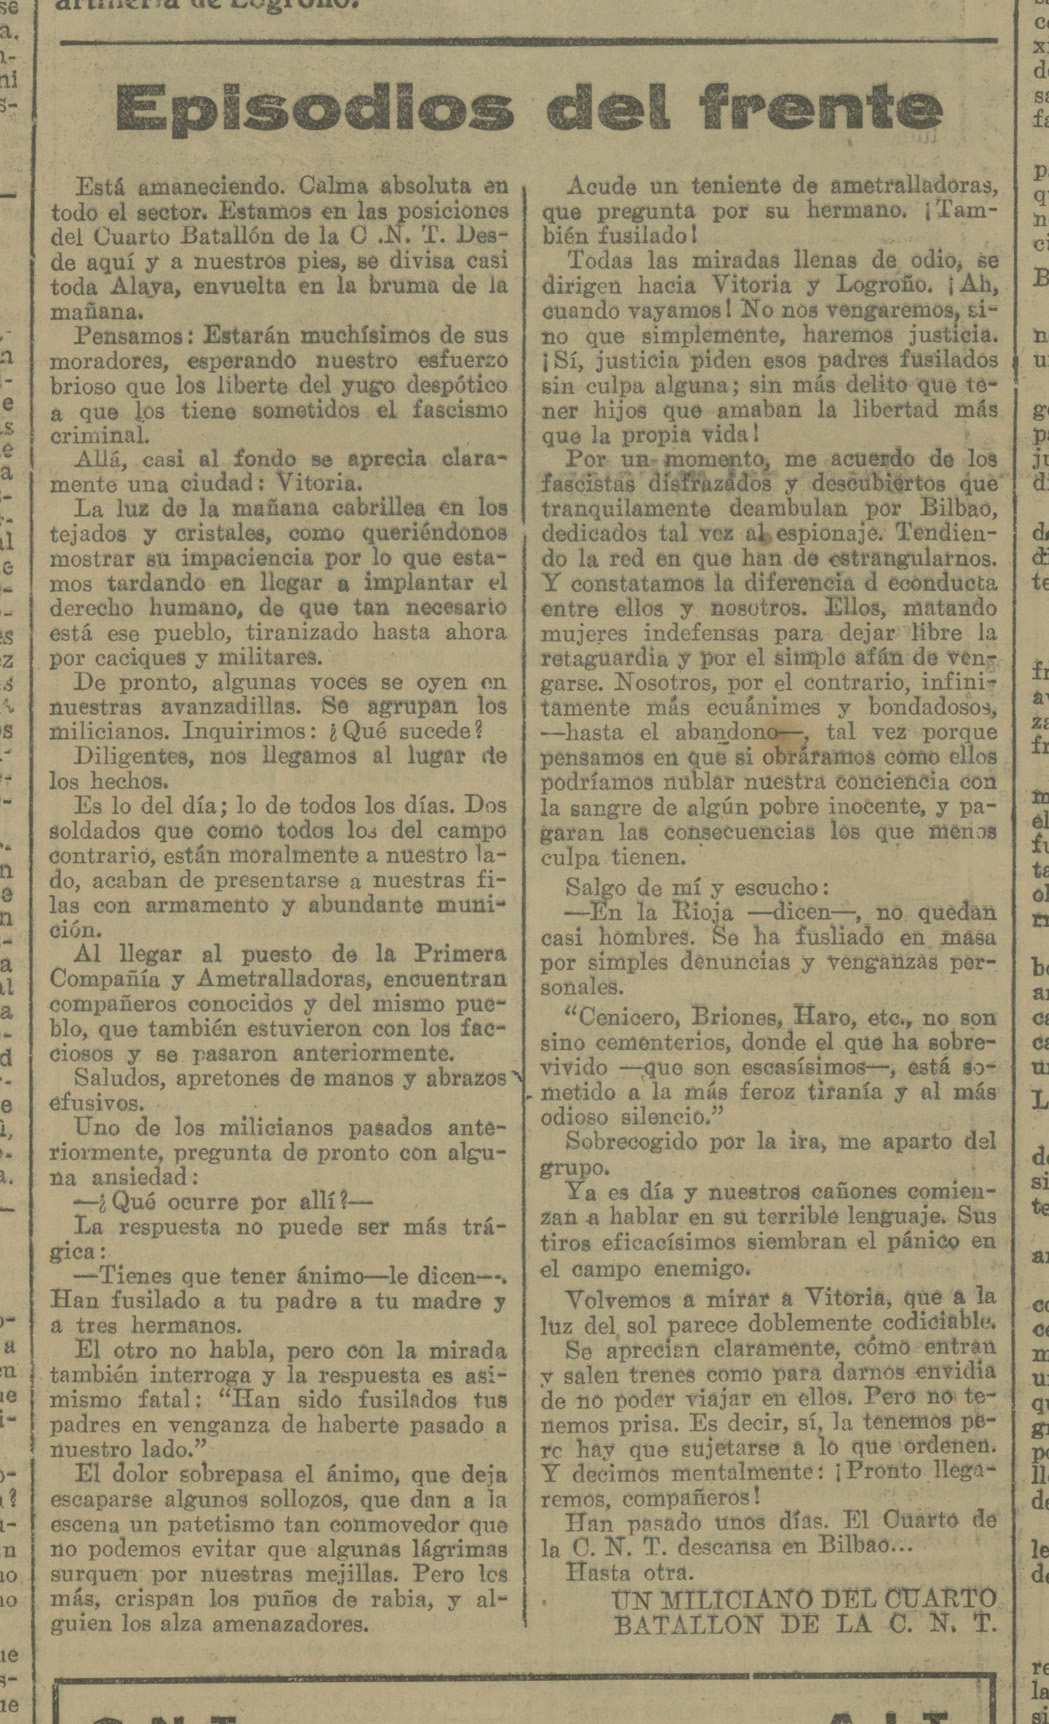 EPISODIOS DEL FRENTE. Recorte CNT del Norte, 16 de enero de 1937